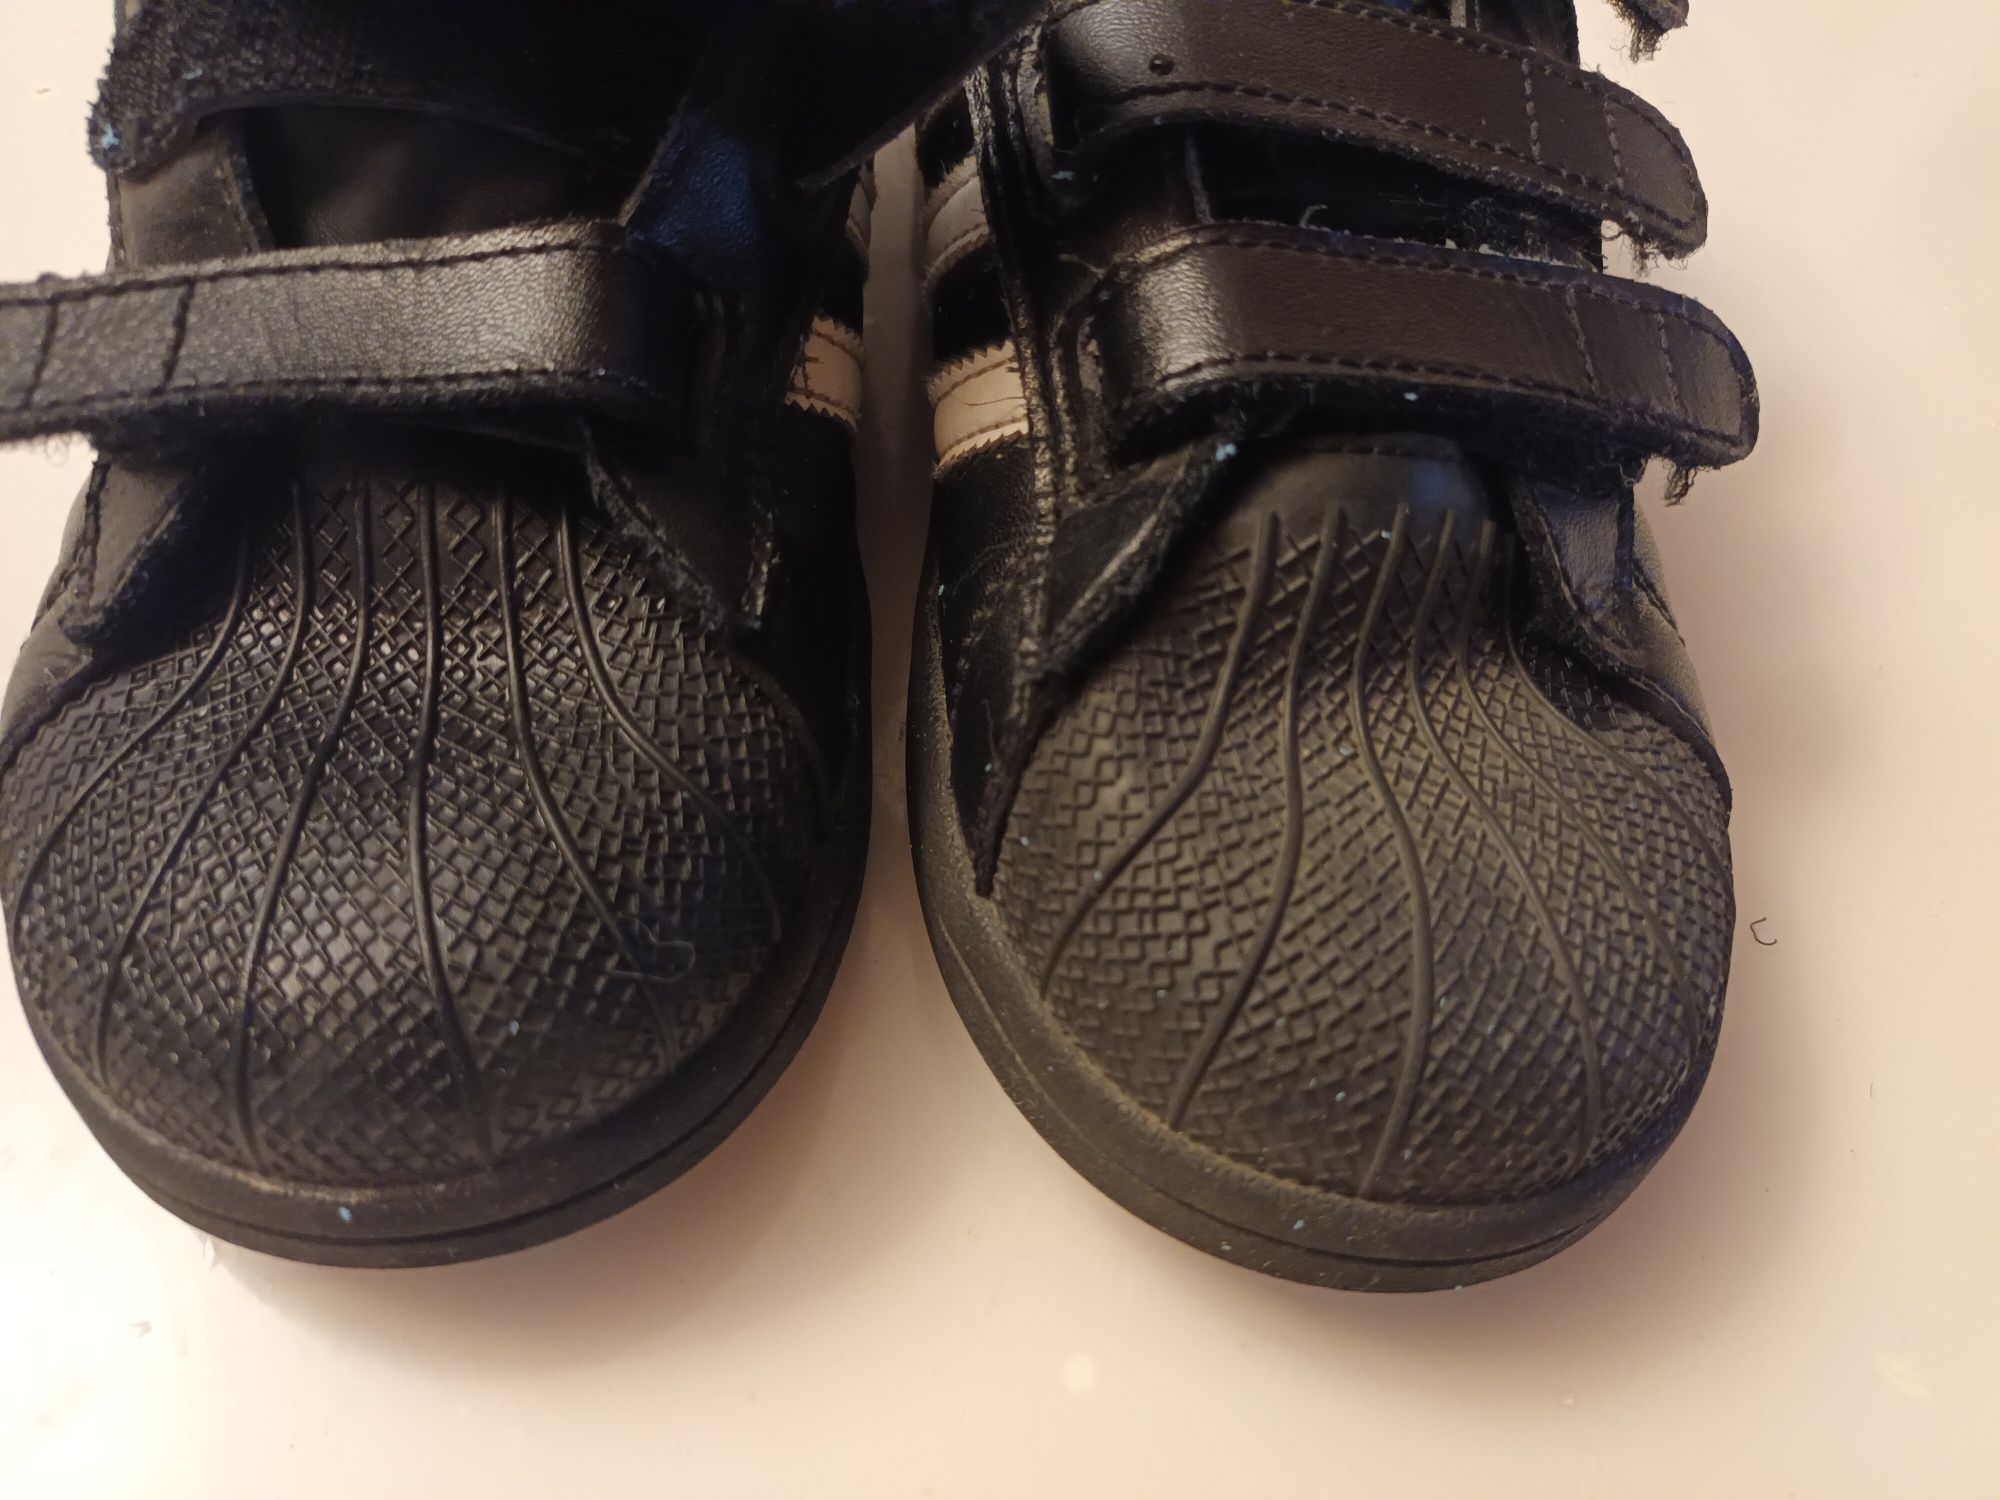 Продамо дітячи кросівки Adidas 33 розмір